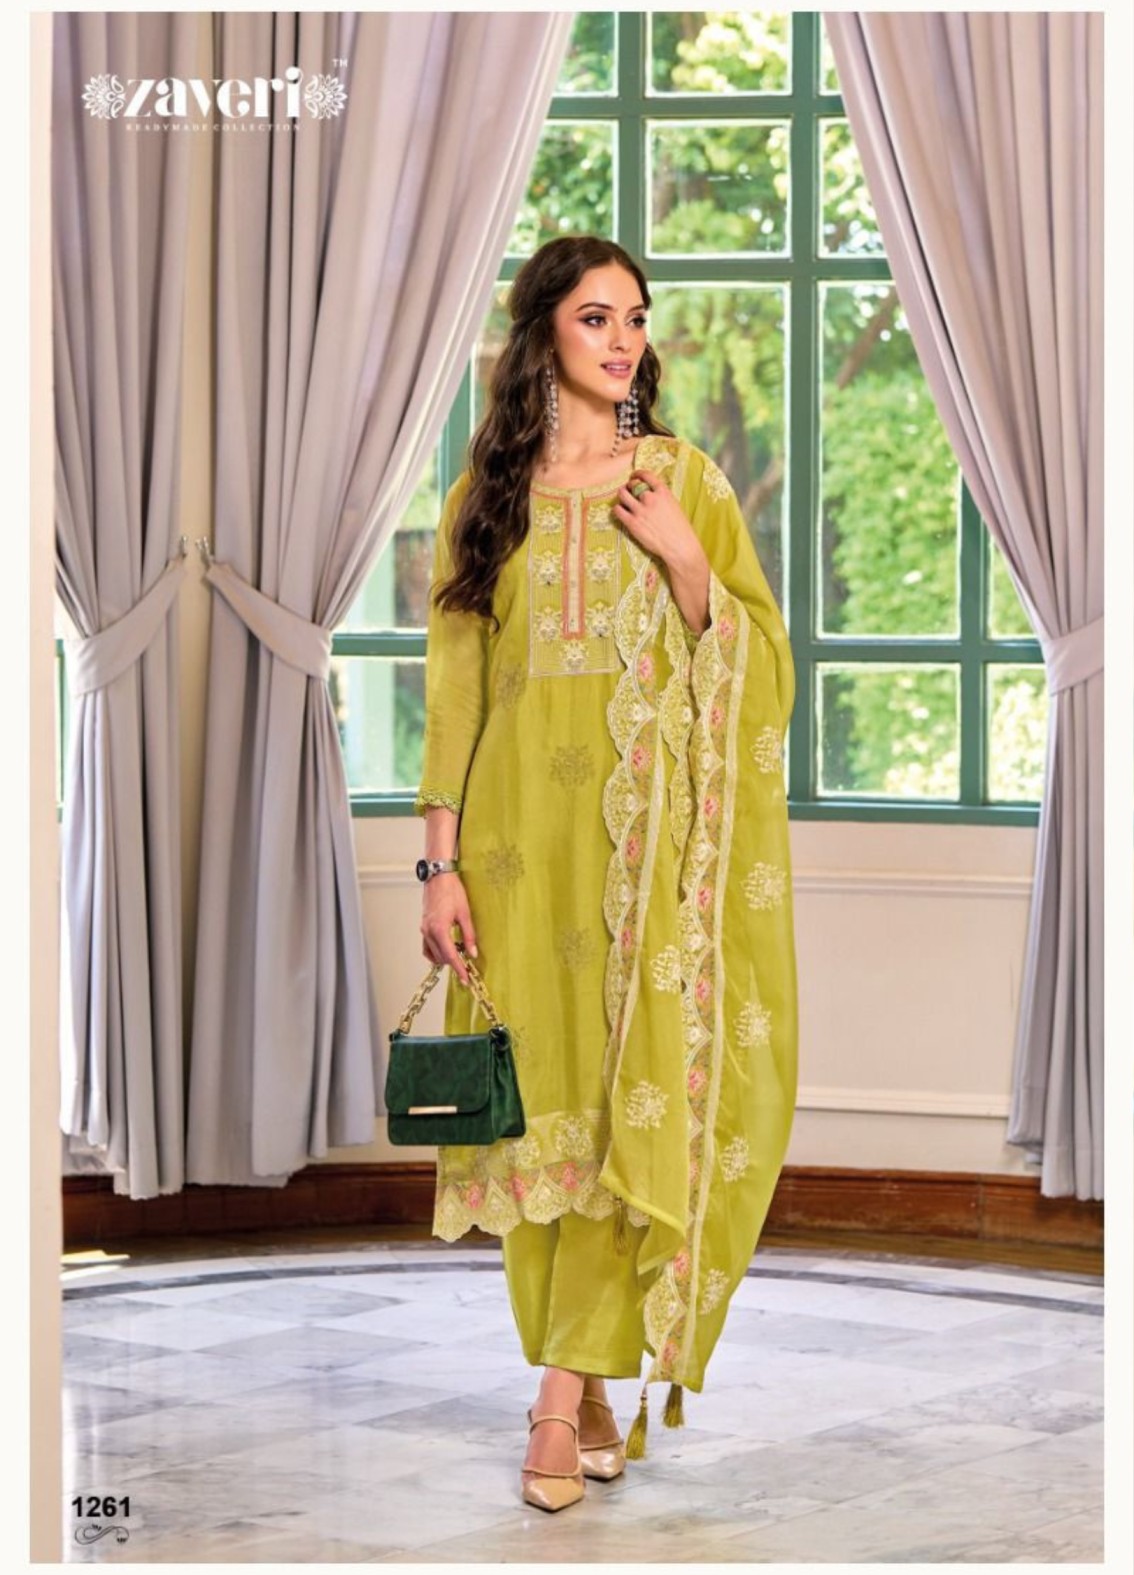 MEN WOMEN'S STYLISH KURTA & KURTI PANT SET COUPLE INDIAN DRESS READY TO  WEAR NEW | eBay